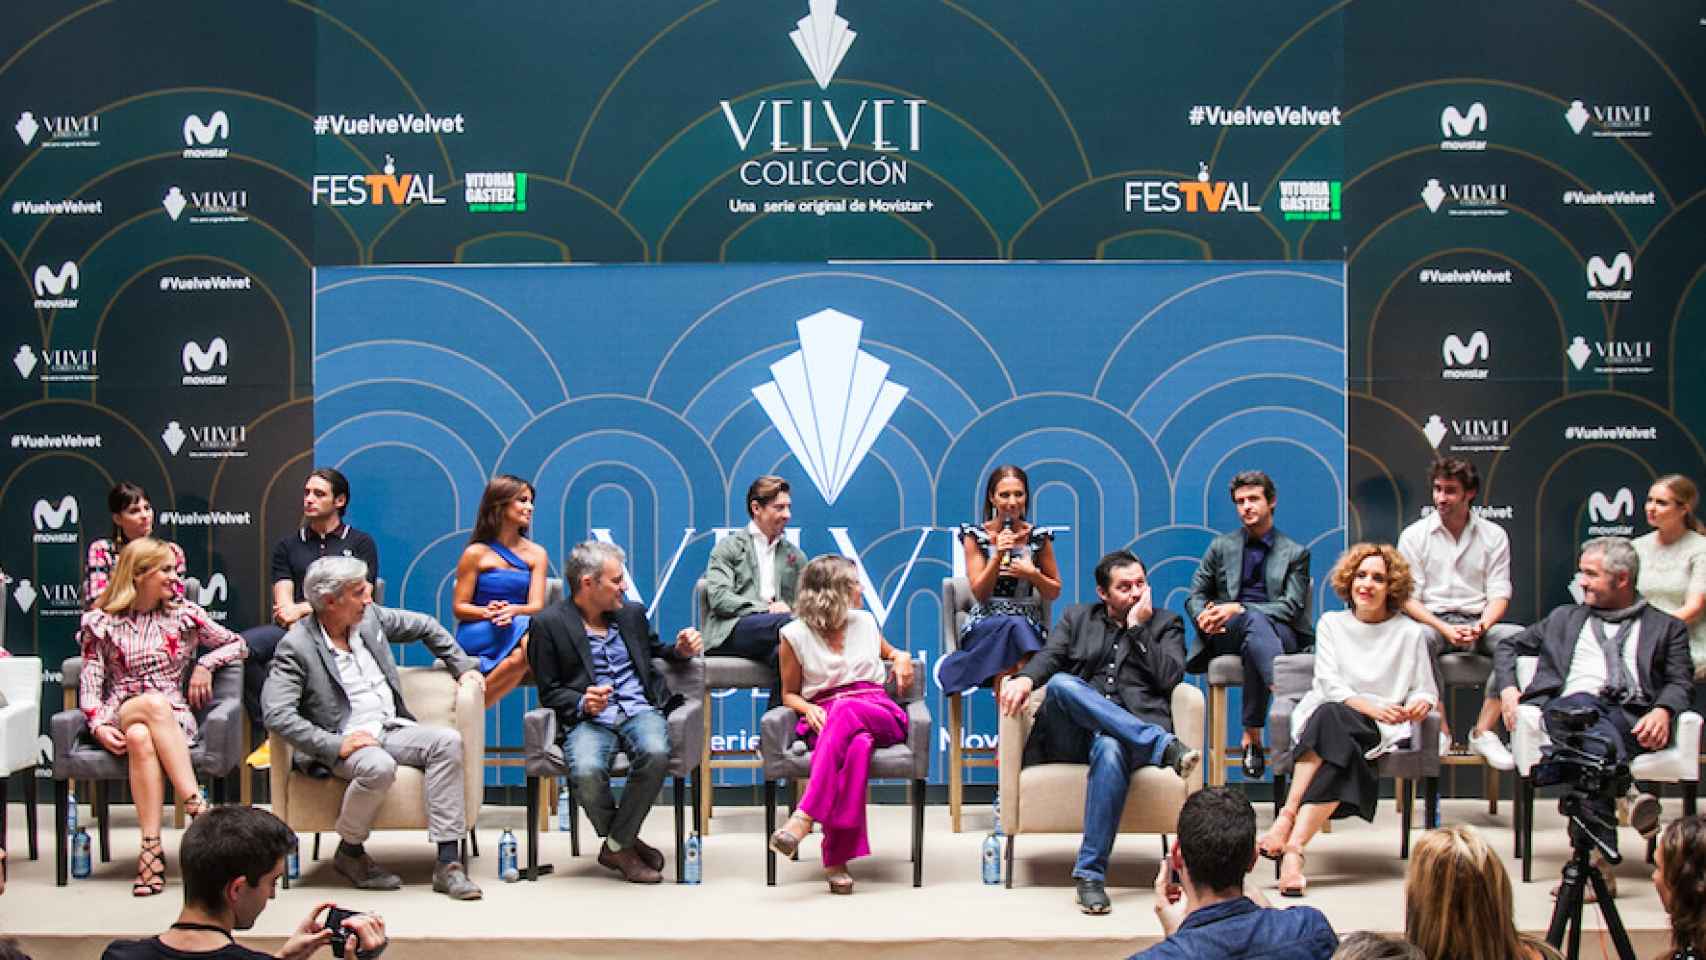 'Velvet Colección' en el FesTval de Vitoria.